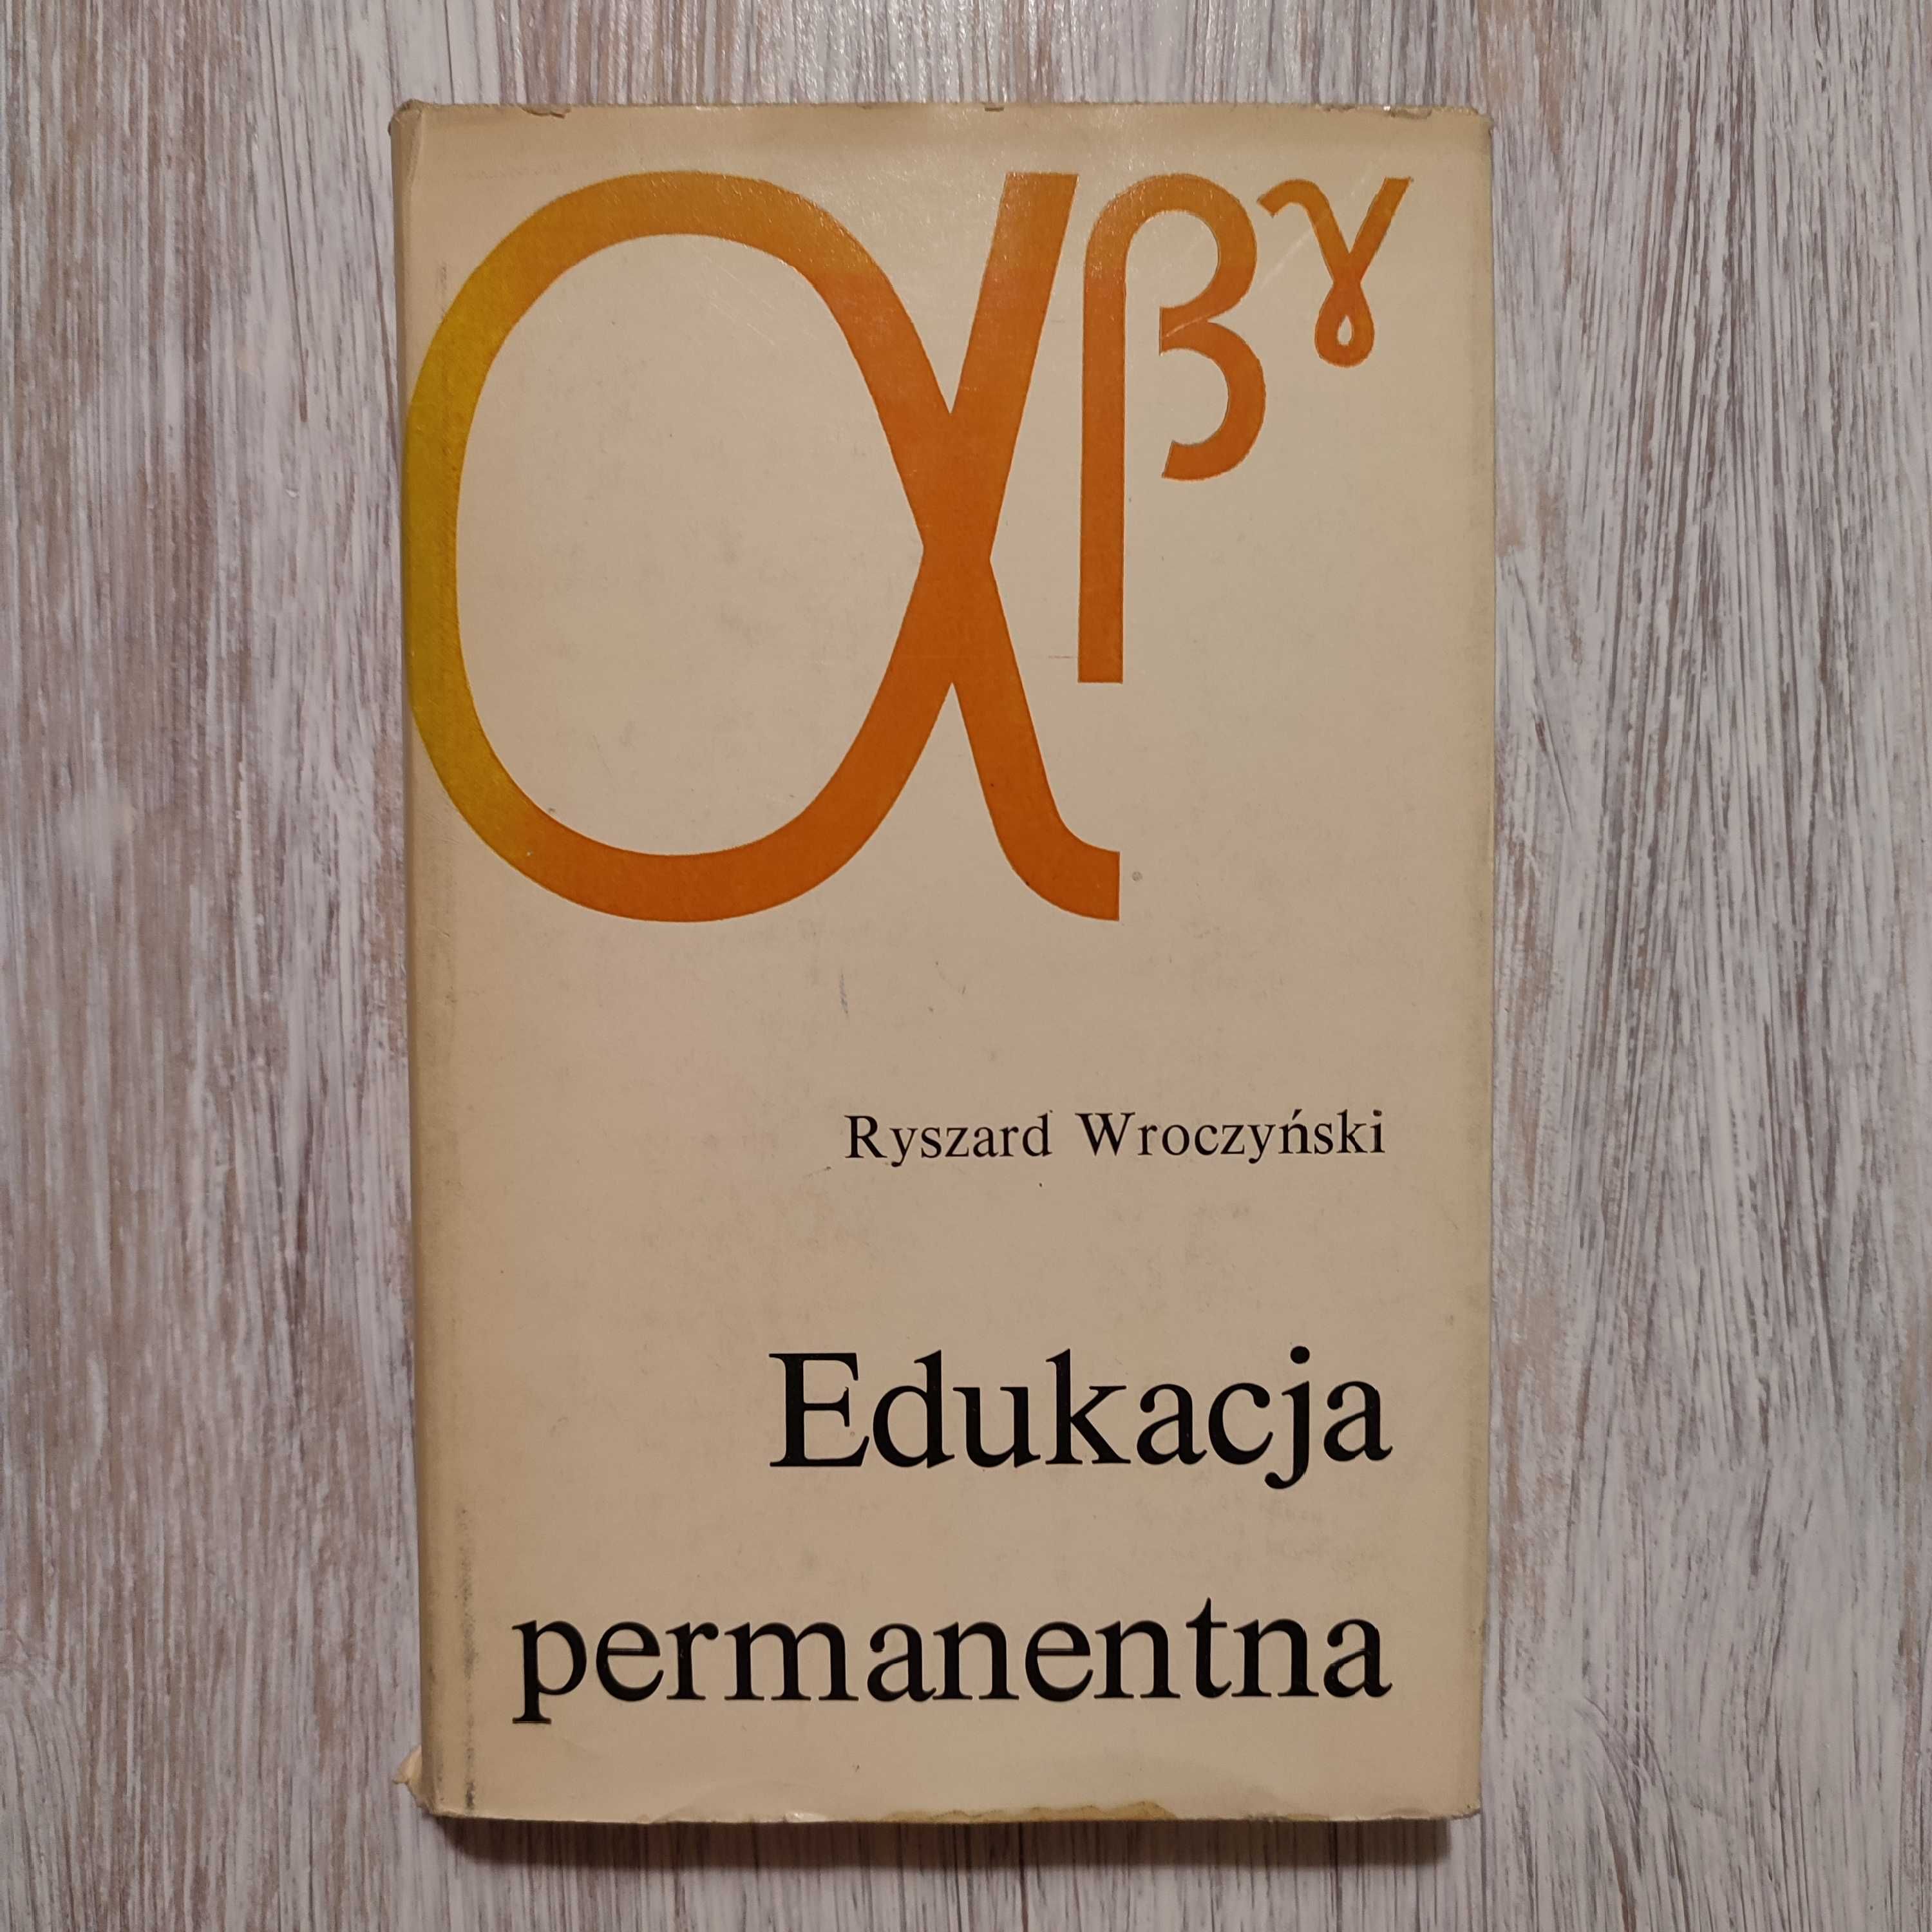 Edukacja permanentna - Ryszard Wroczyński